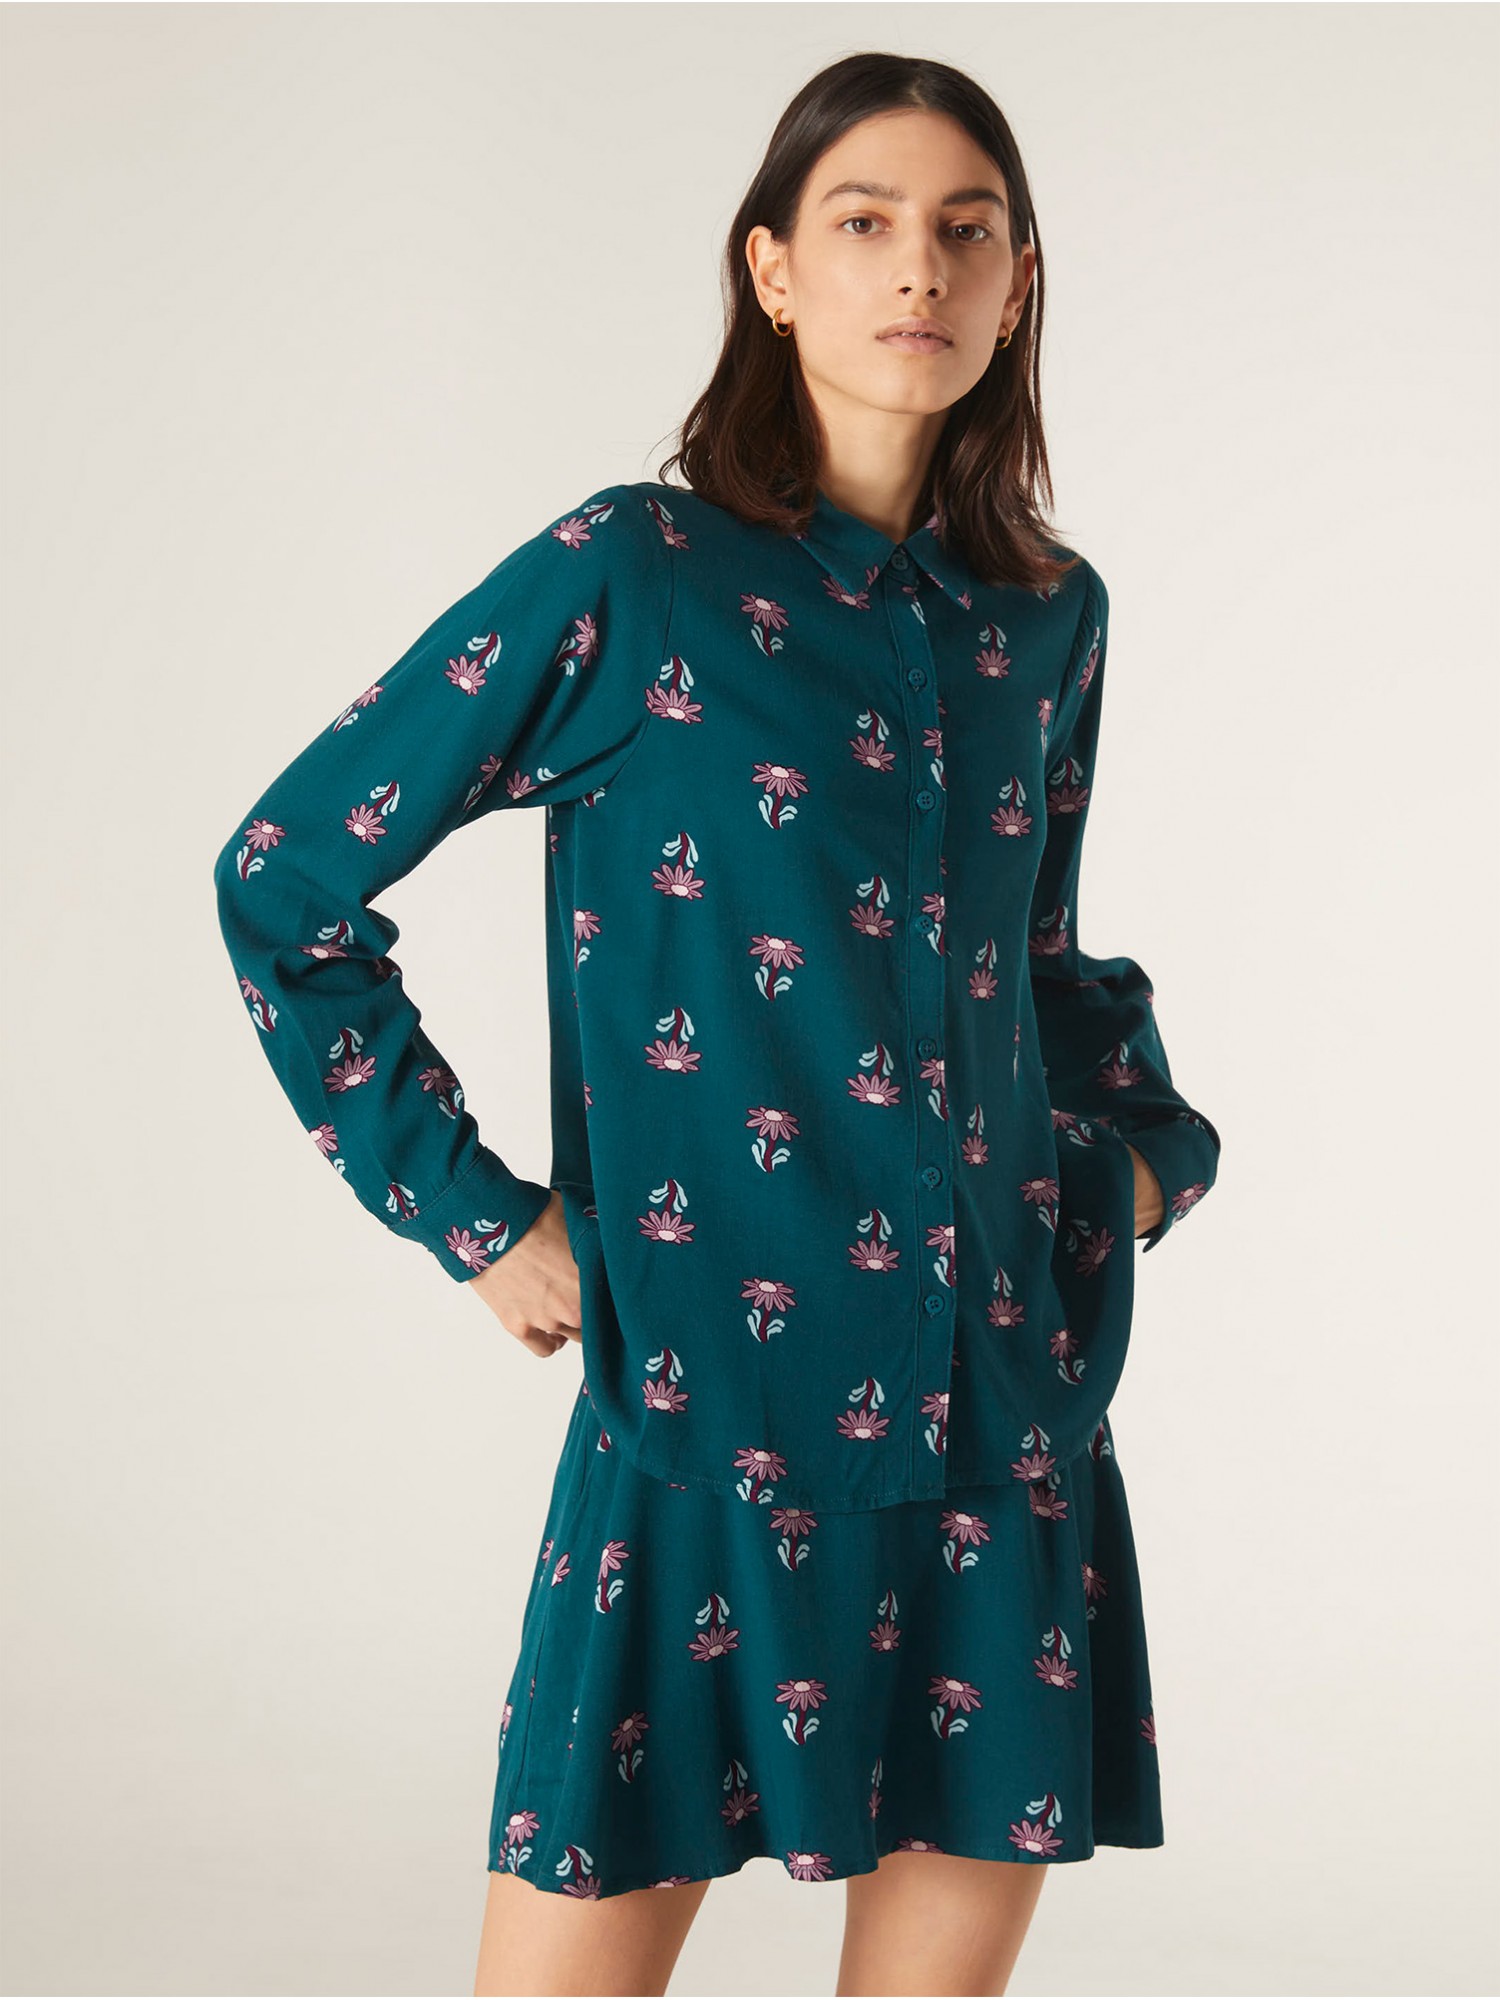 Camisa Sad Compañía Fantástica en candelascloset. Color azul oscuro con estampado floral de margaritas y manga larga para mujer.